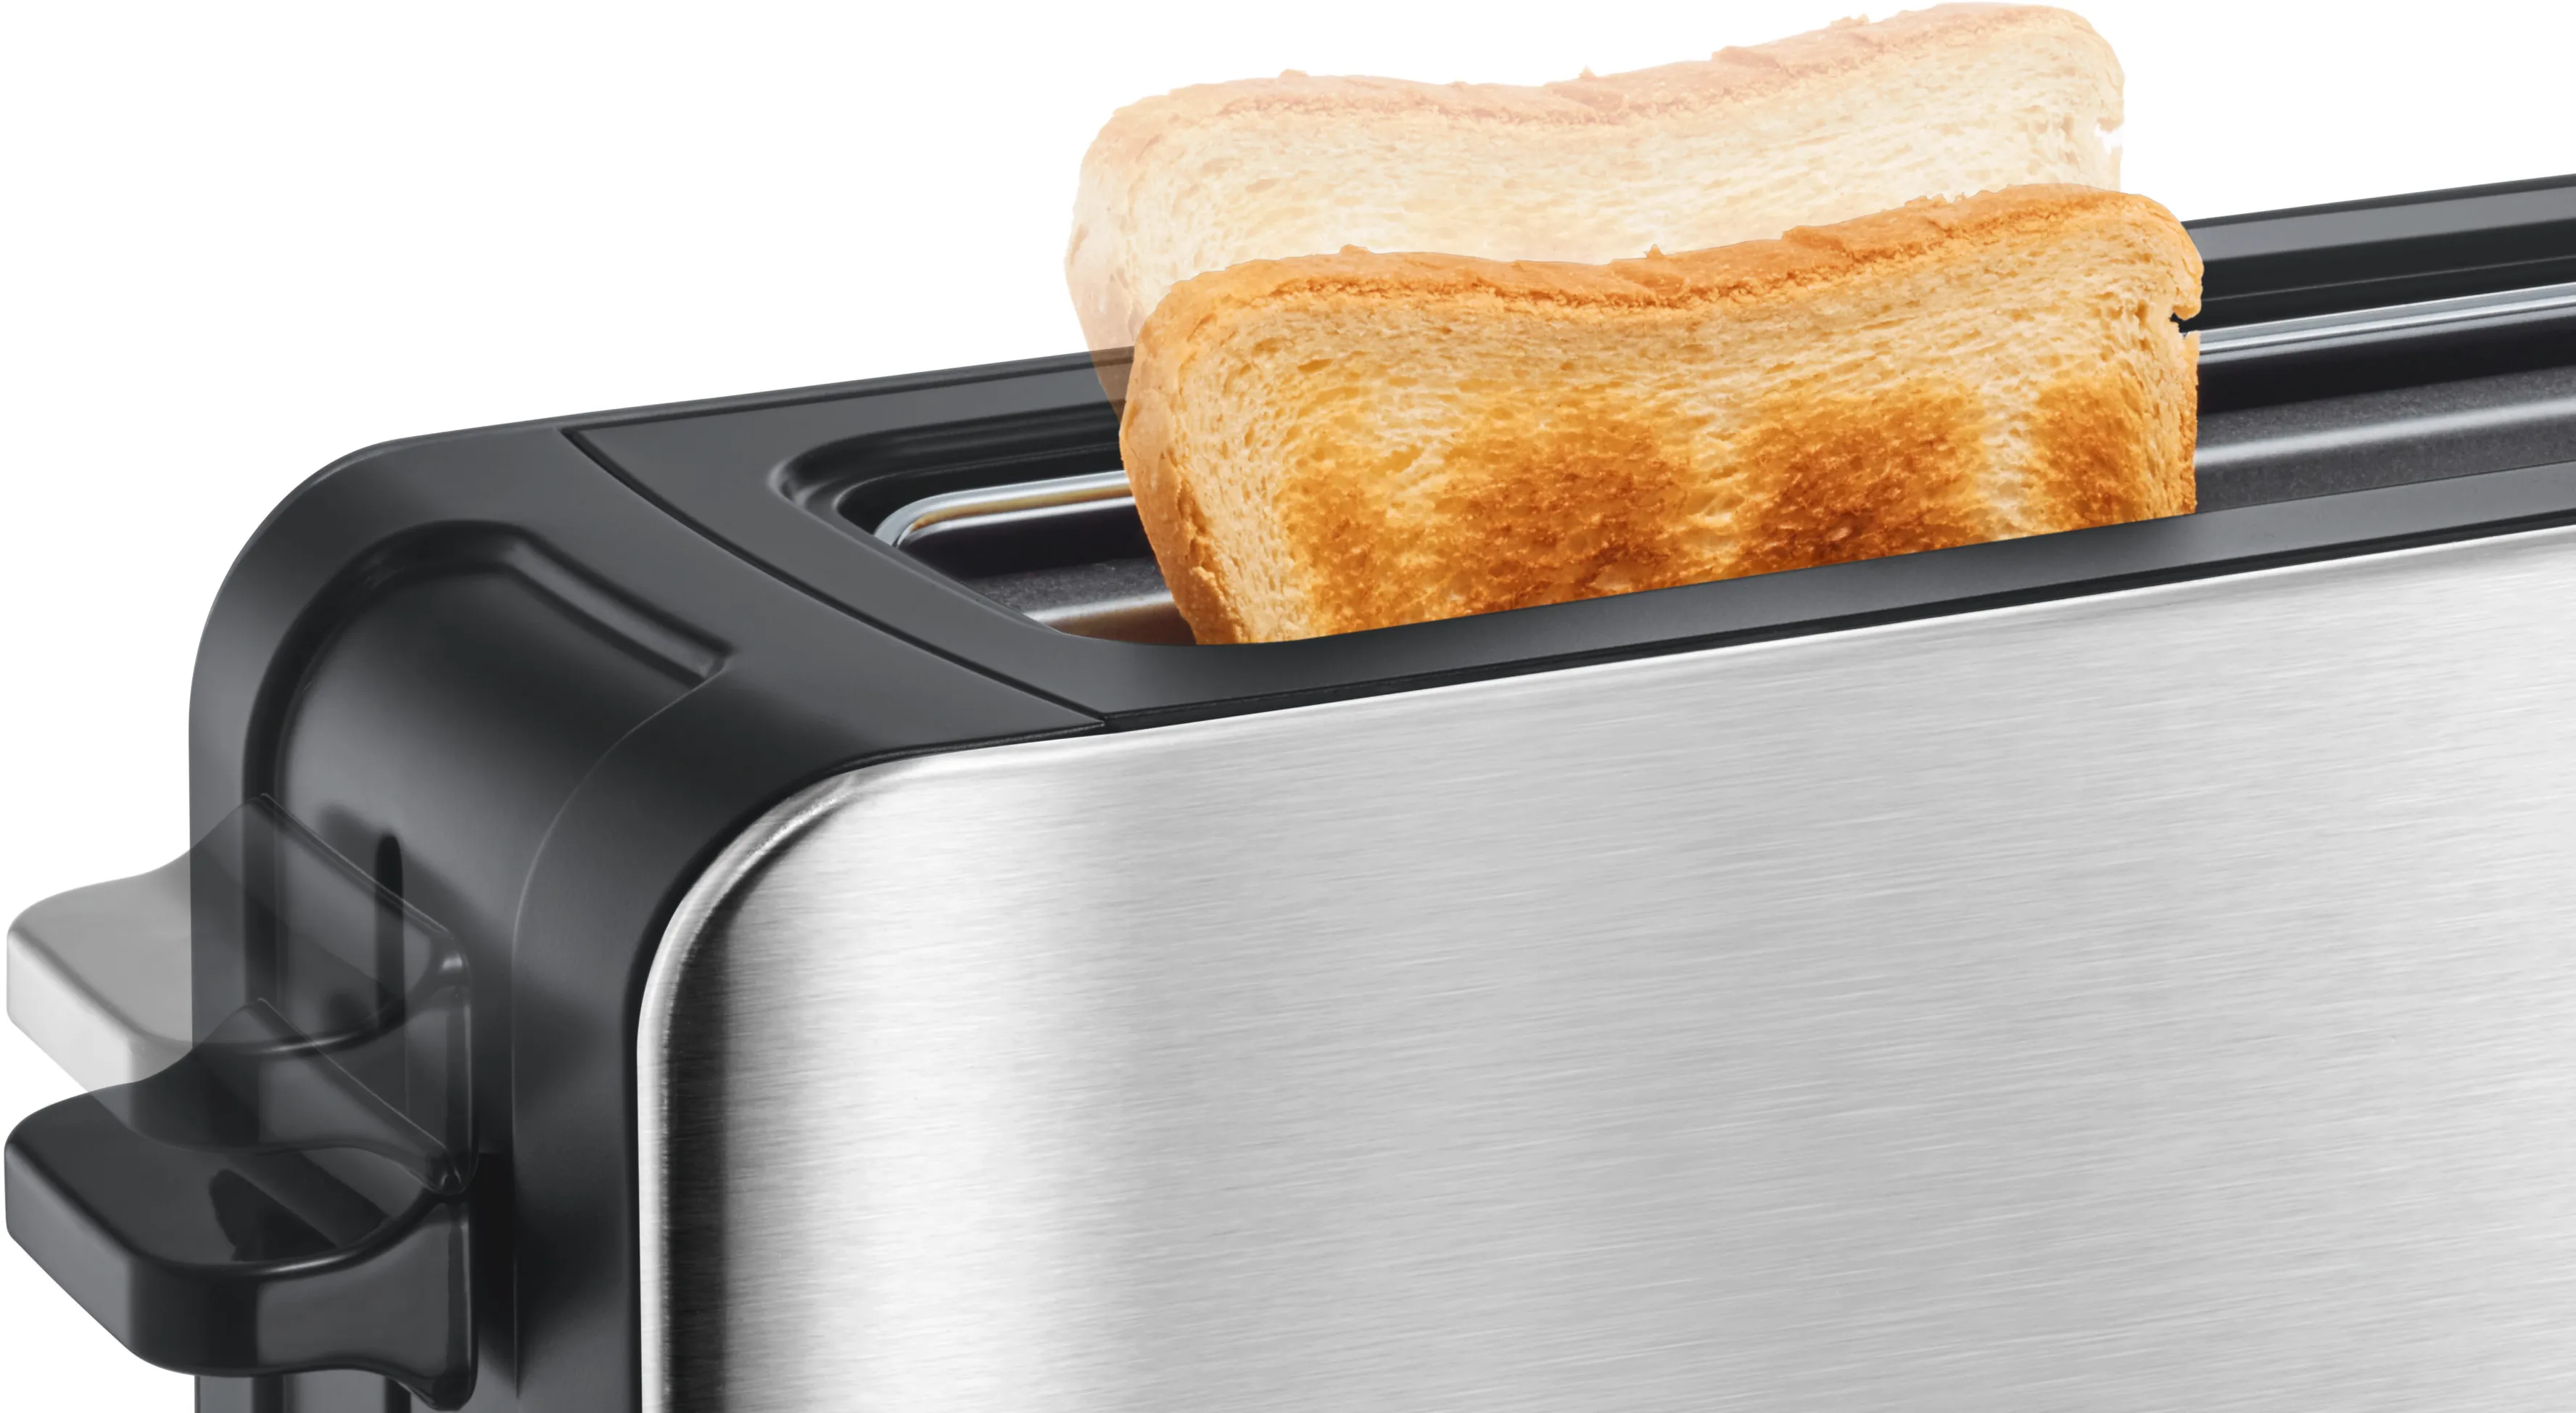 TAT6A803 slot EG toaster | BOSCH Long